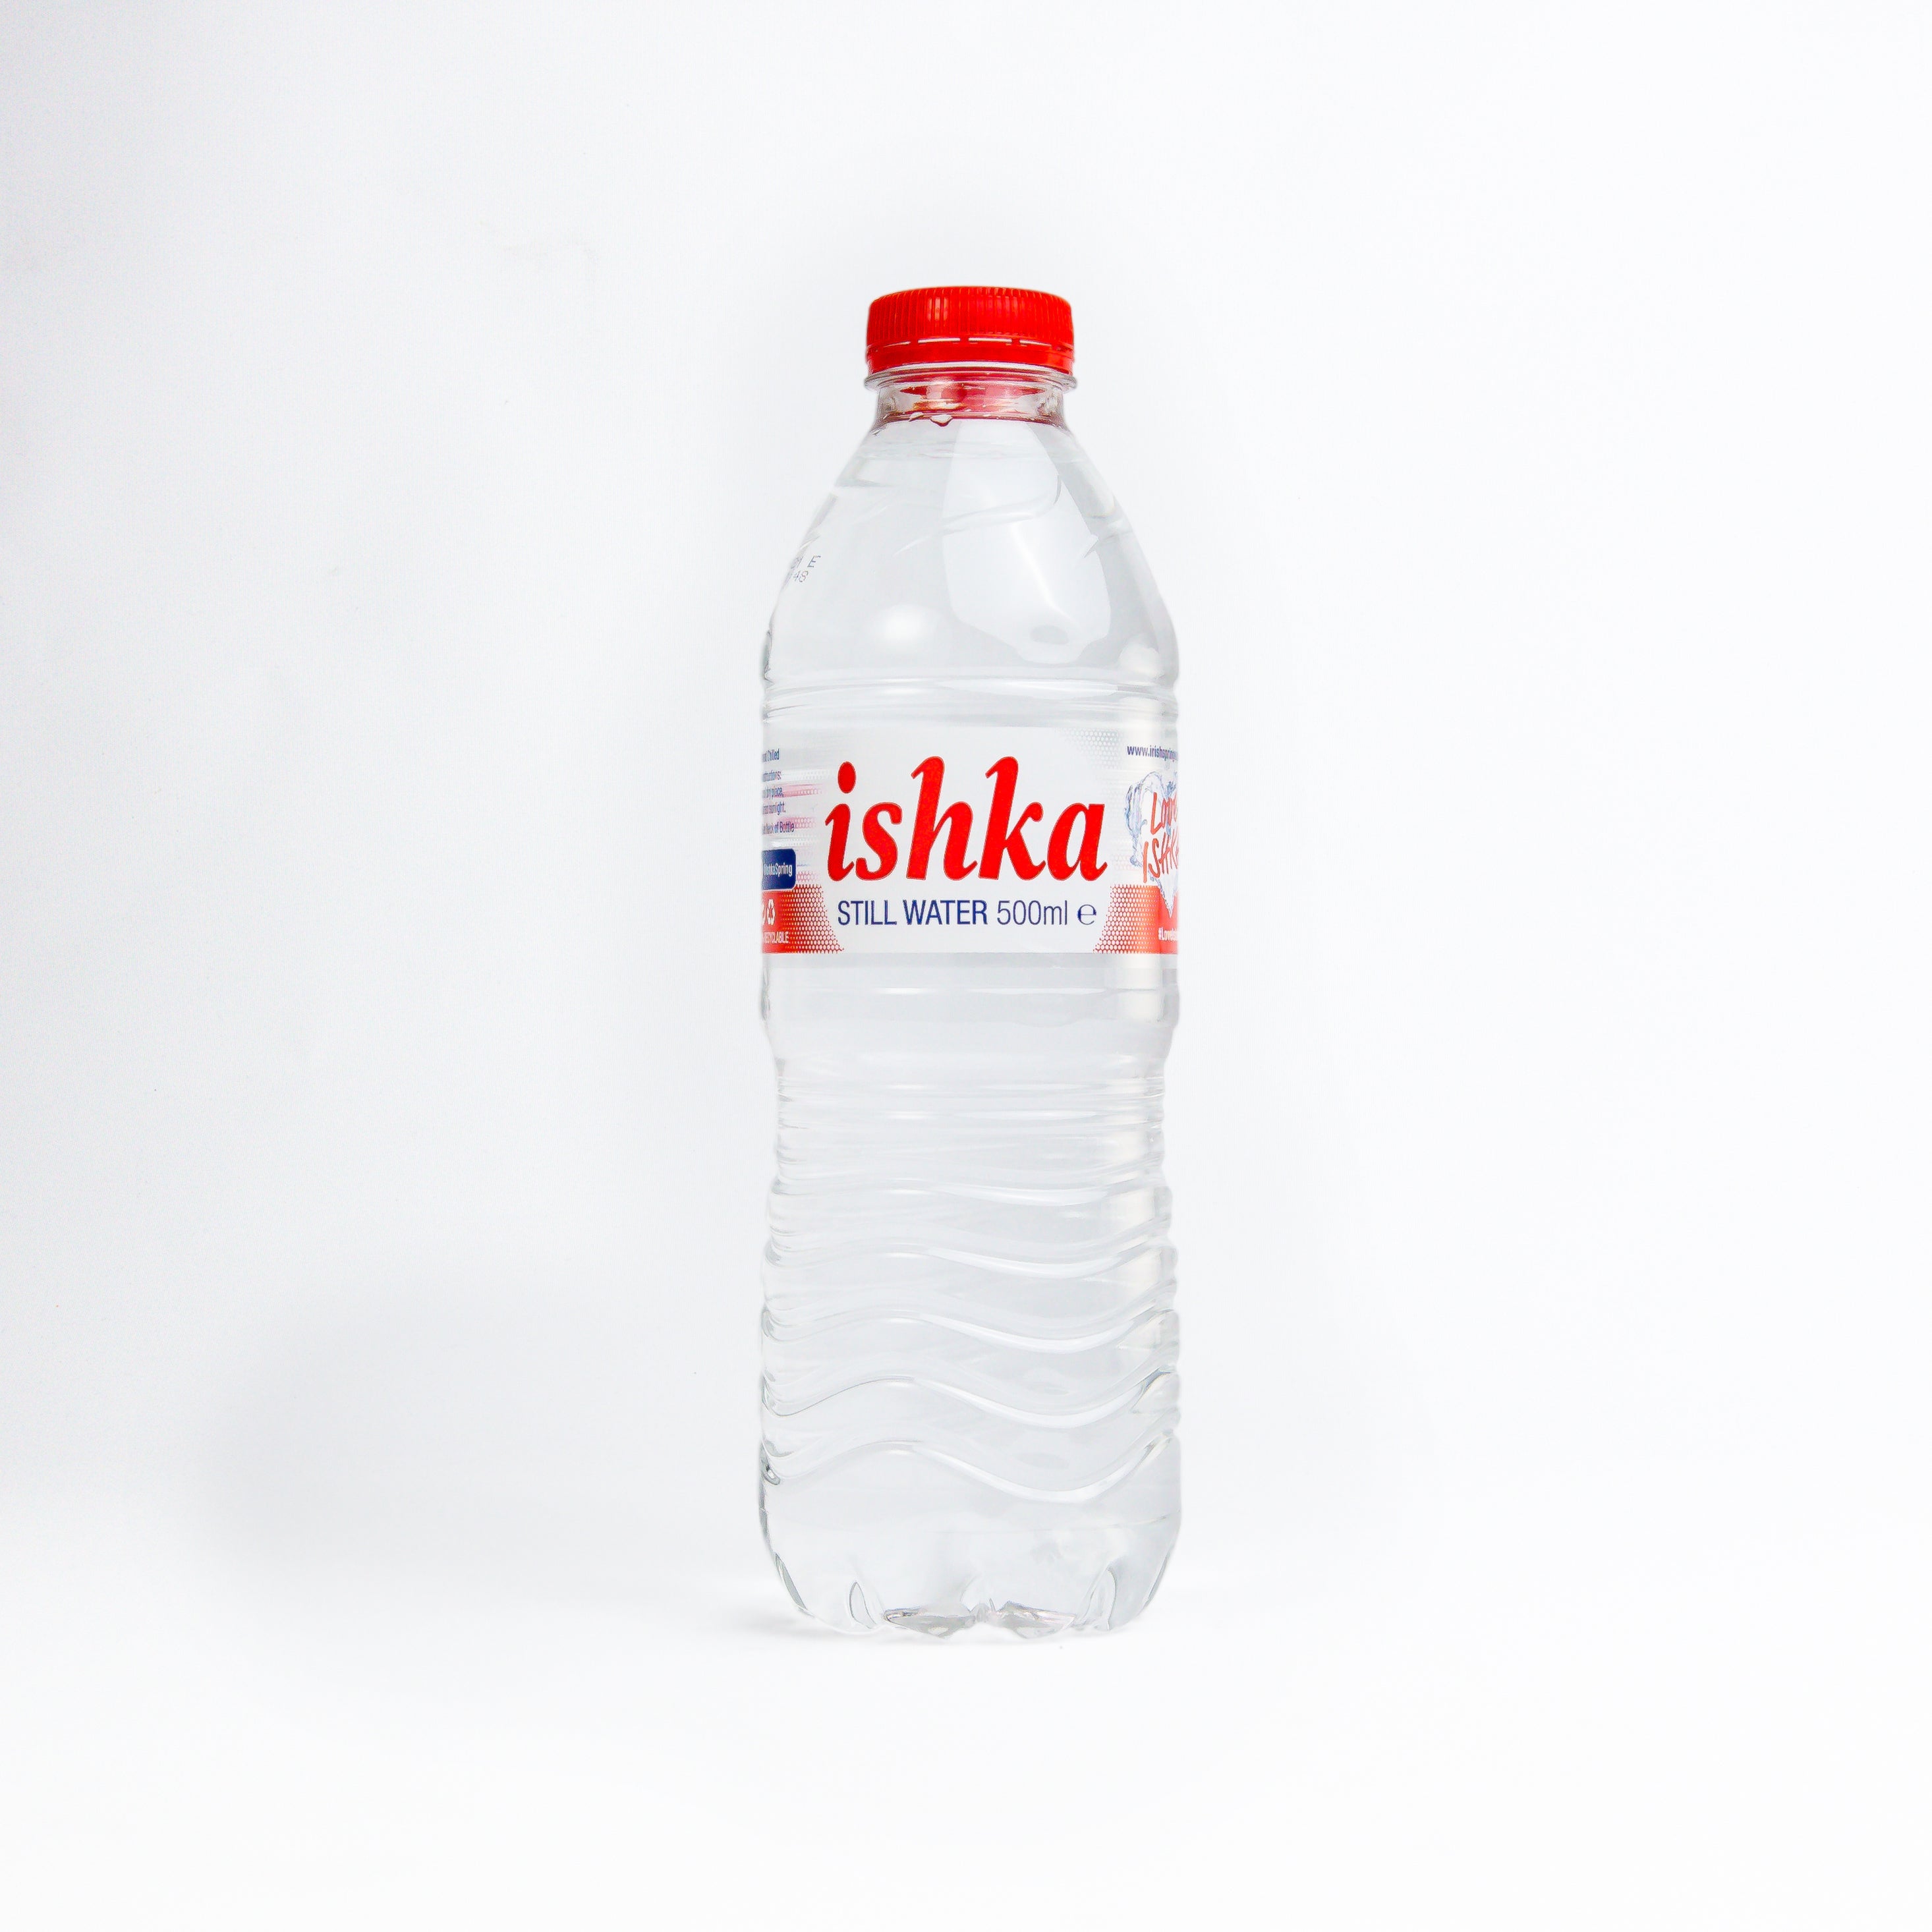 Ishka Irish Spring Water